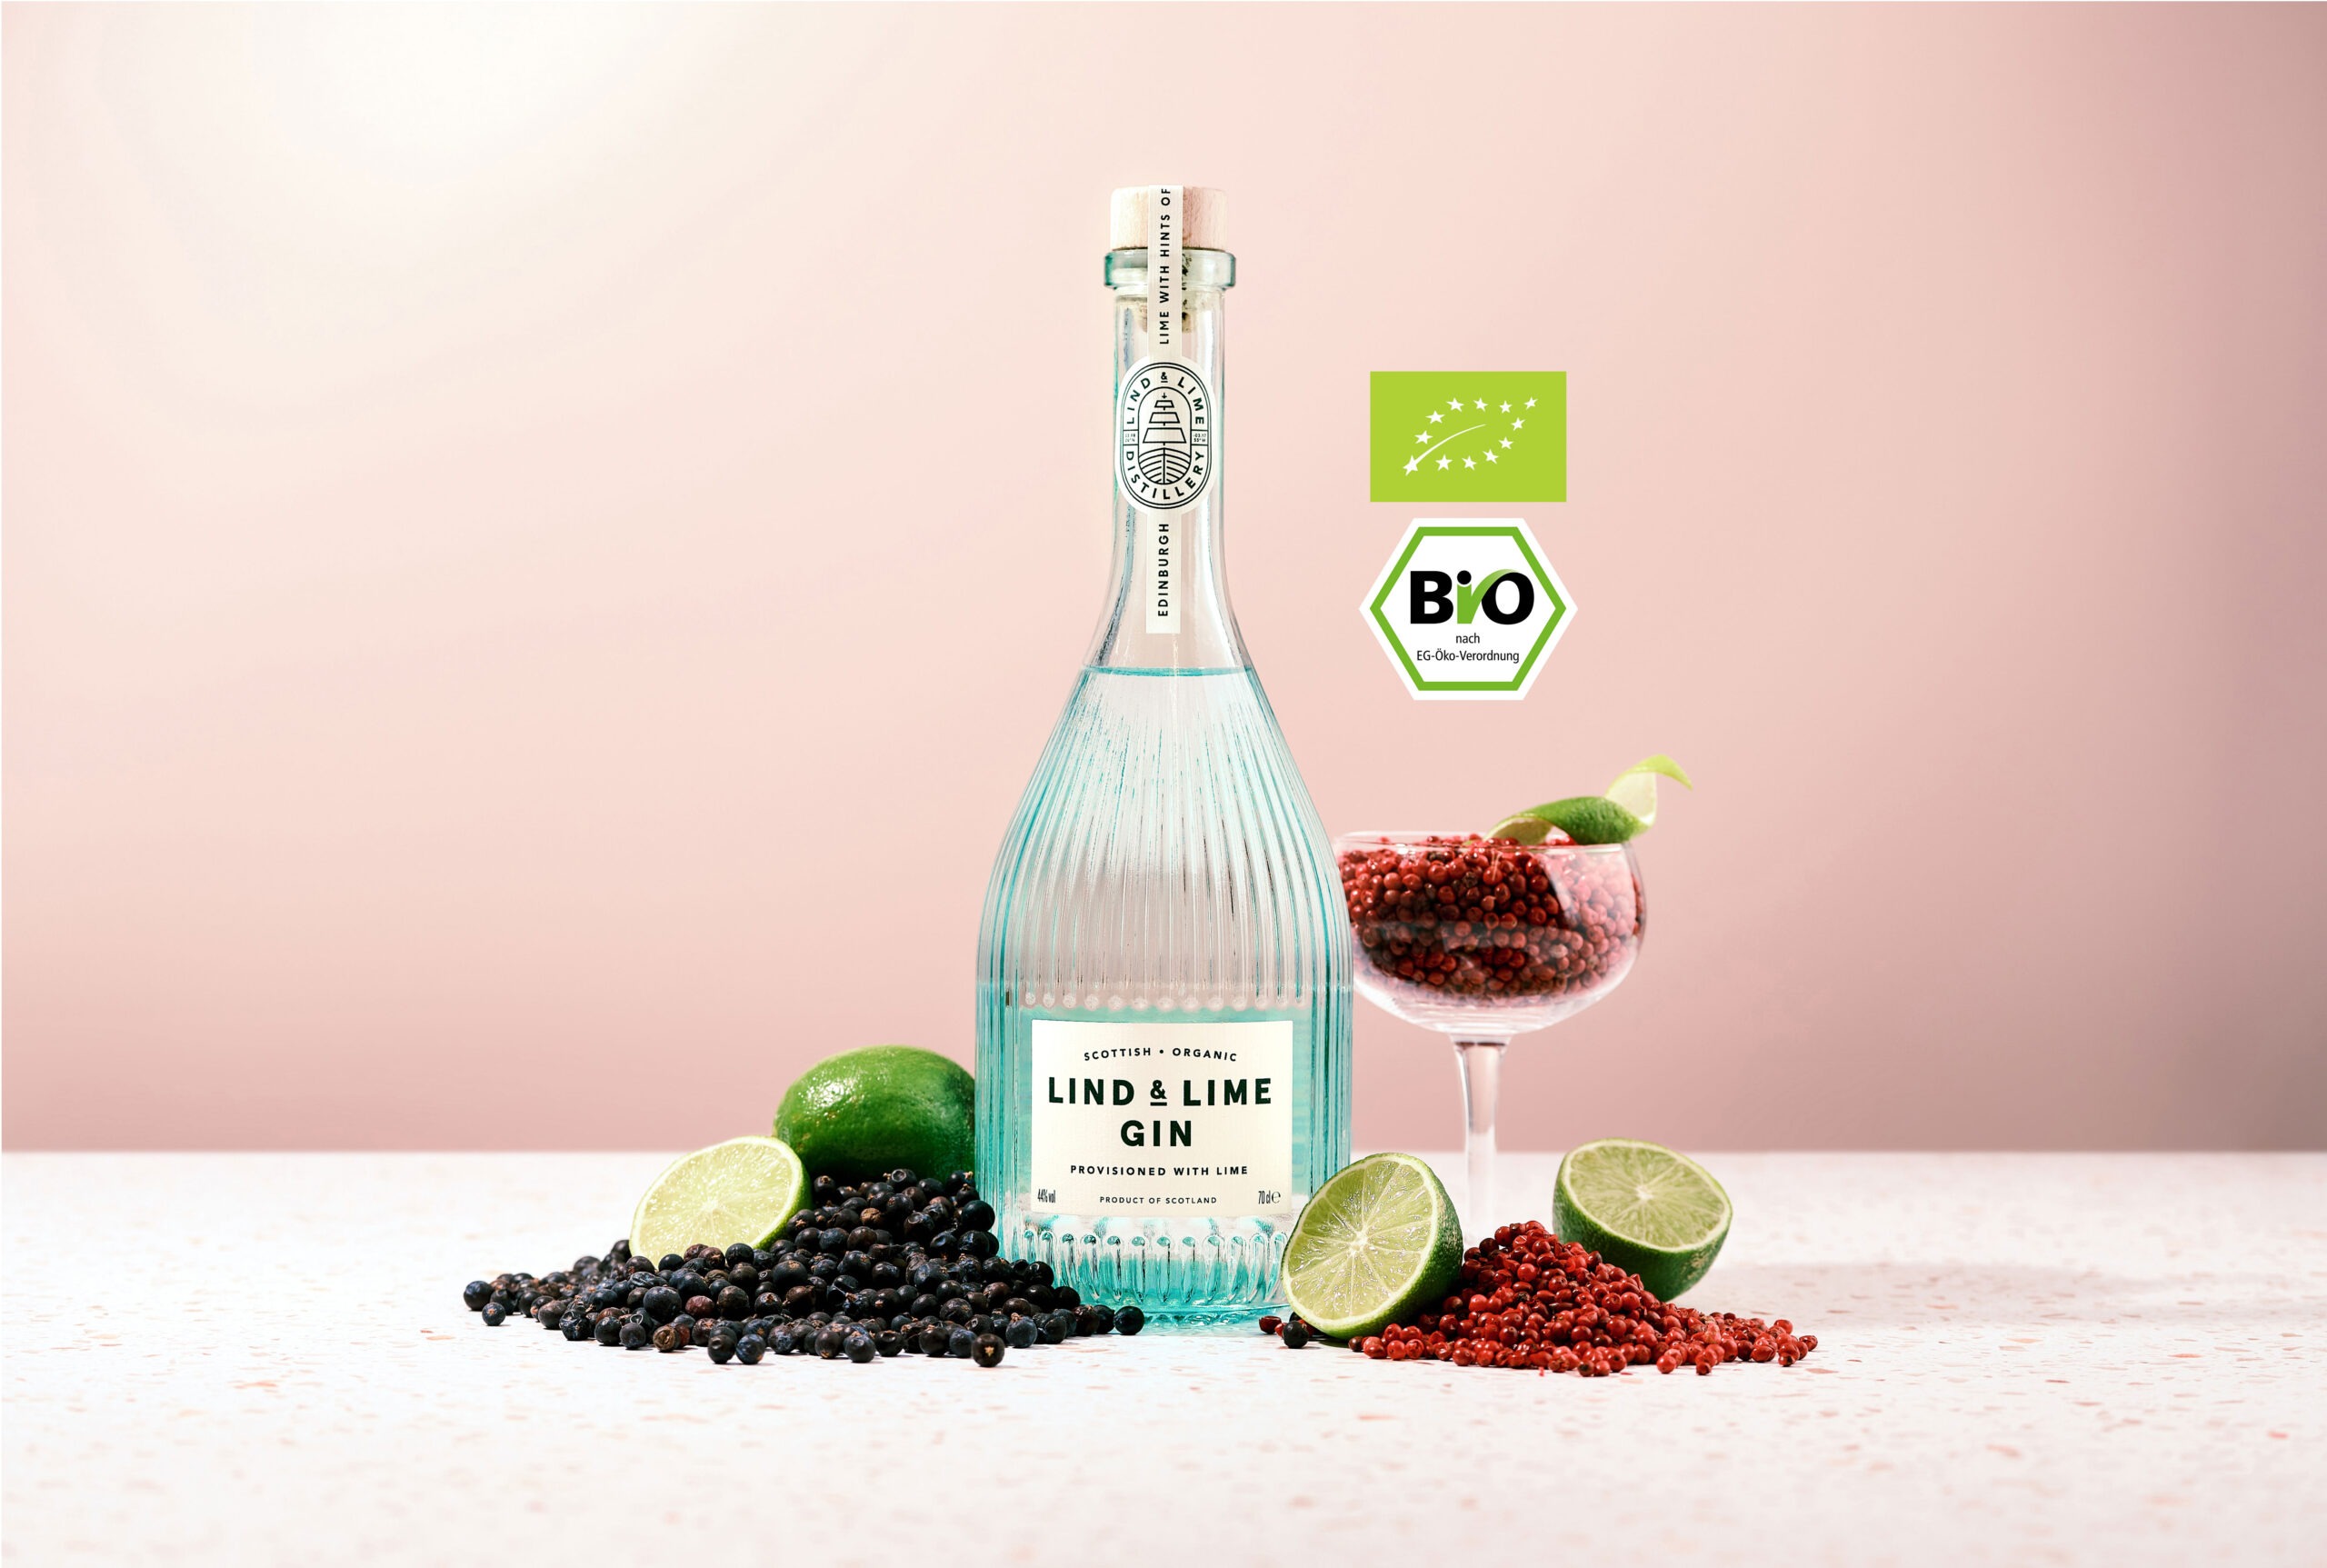 & aus prämierter Lind ist Lime & produzierter ein nachhaltig Edinburgh Gin